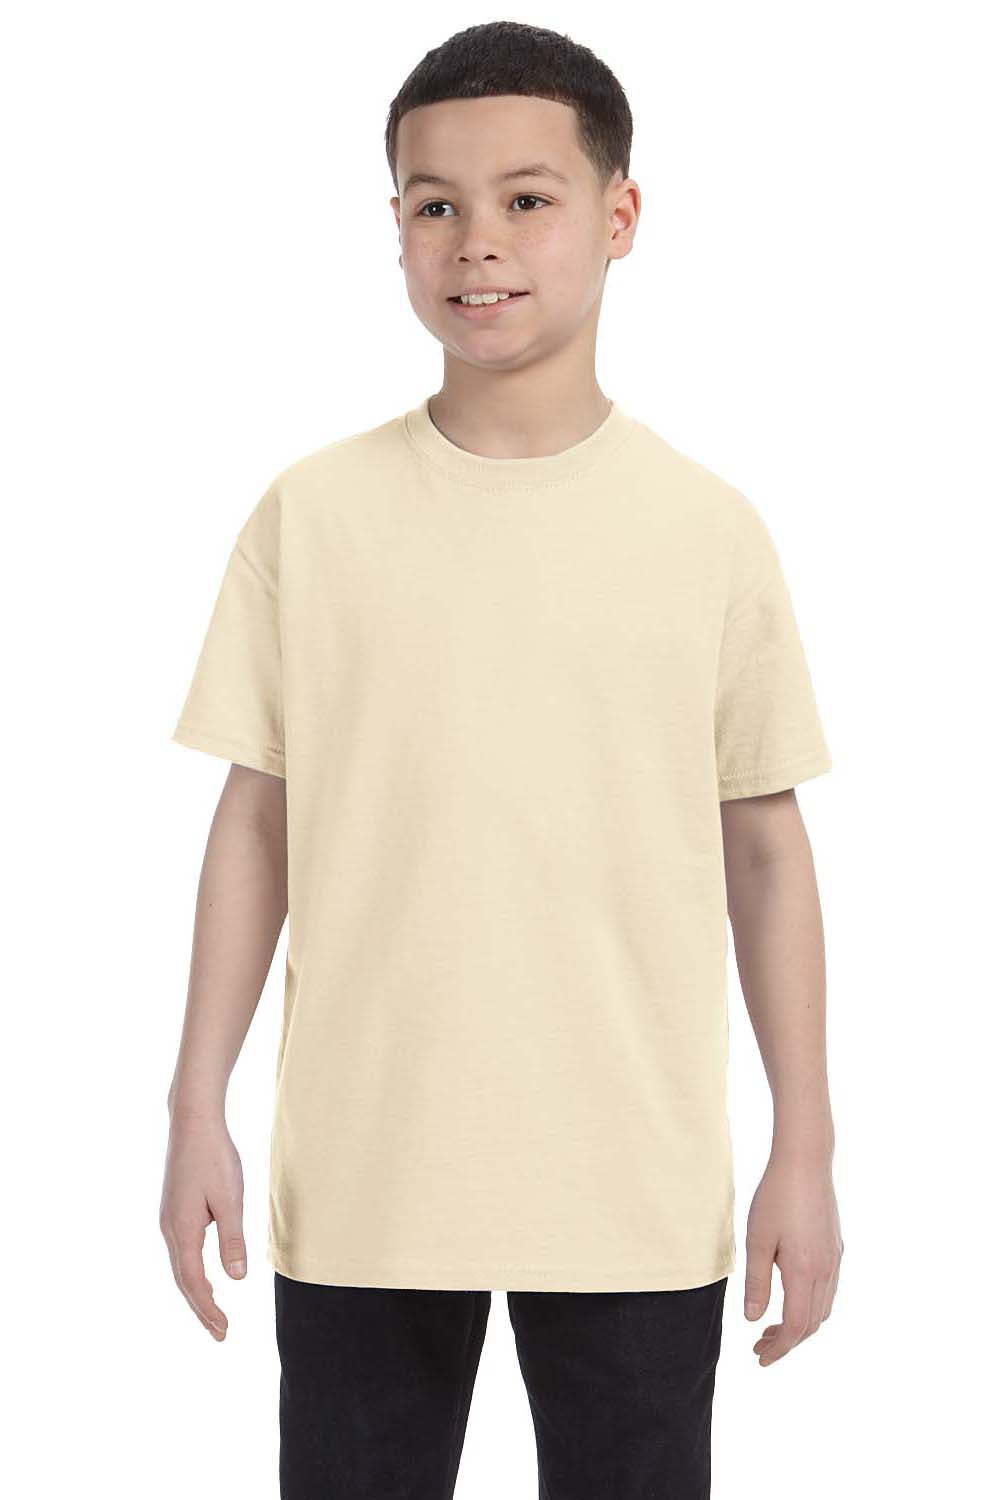 Gildan G500B Youth Short Sleeve Crewneck T-Shirt Natural Front